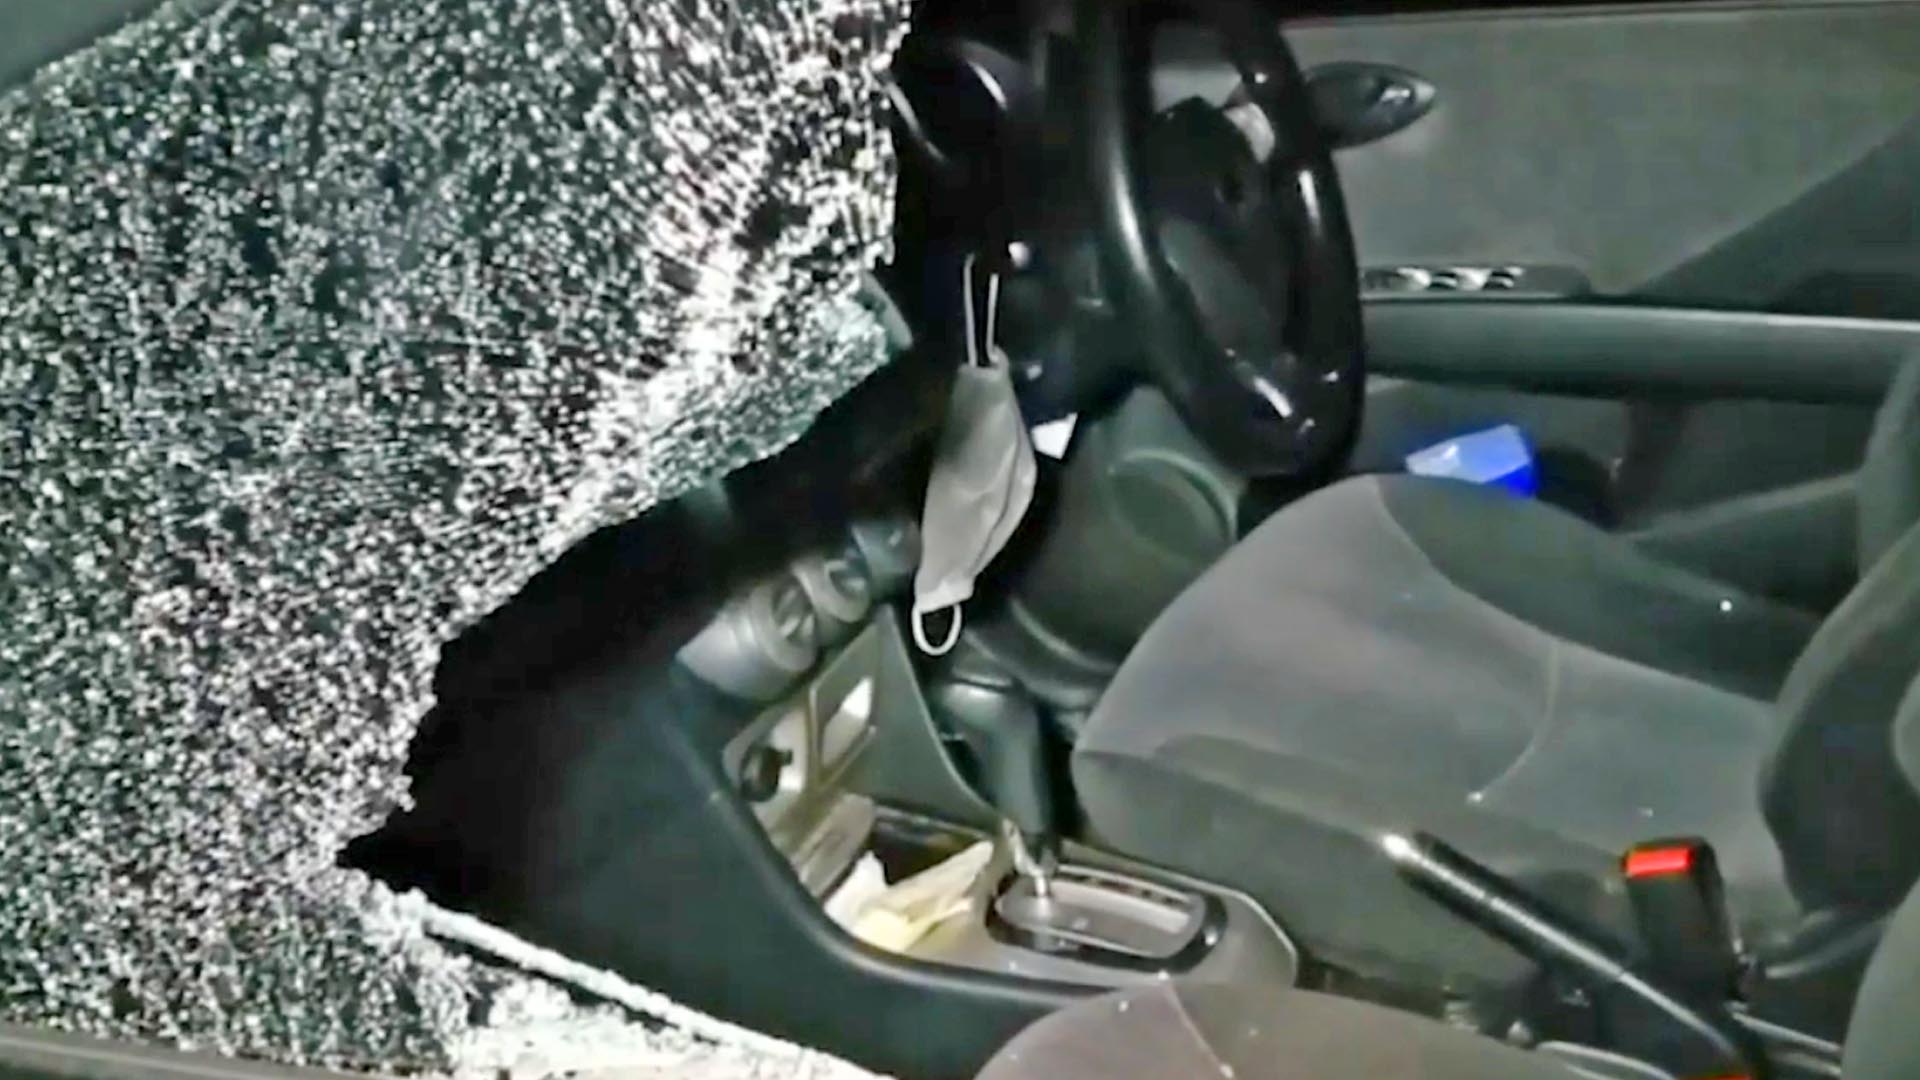 Pecahkan Kaca Mobil, Uang Rp25 Juta Raib Digasak Maling